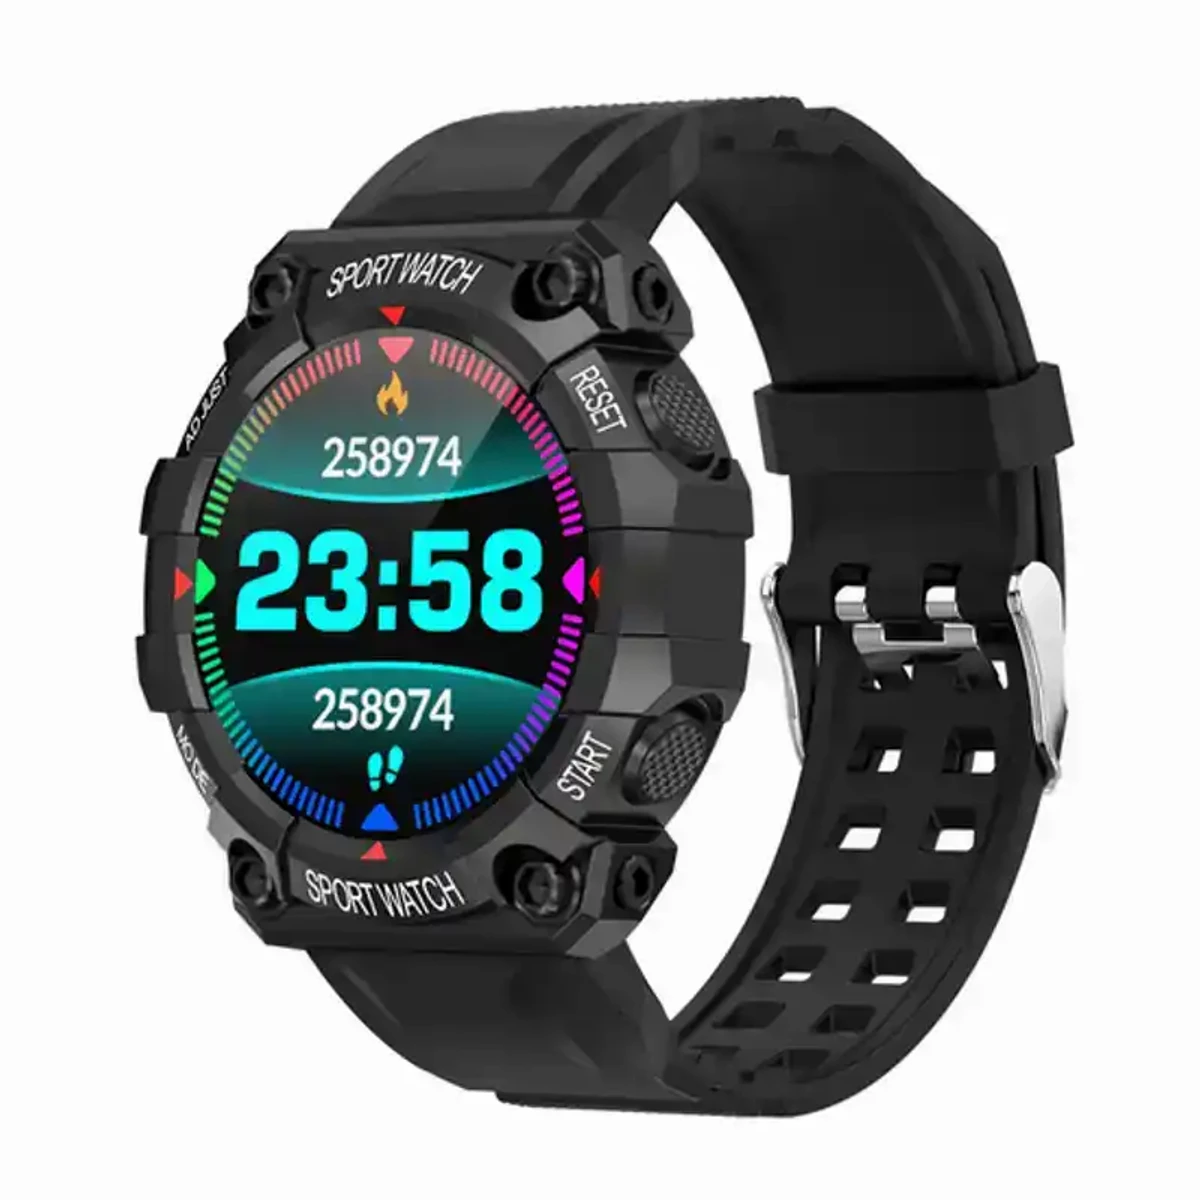 Mixi pro X10 smart watch